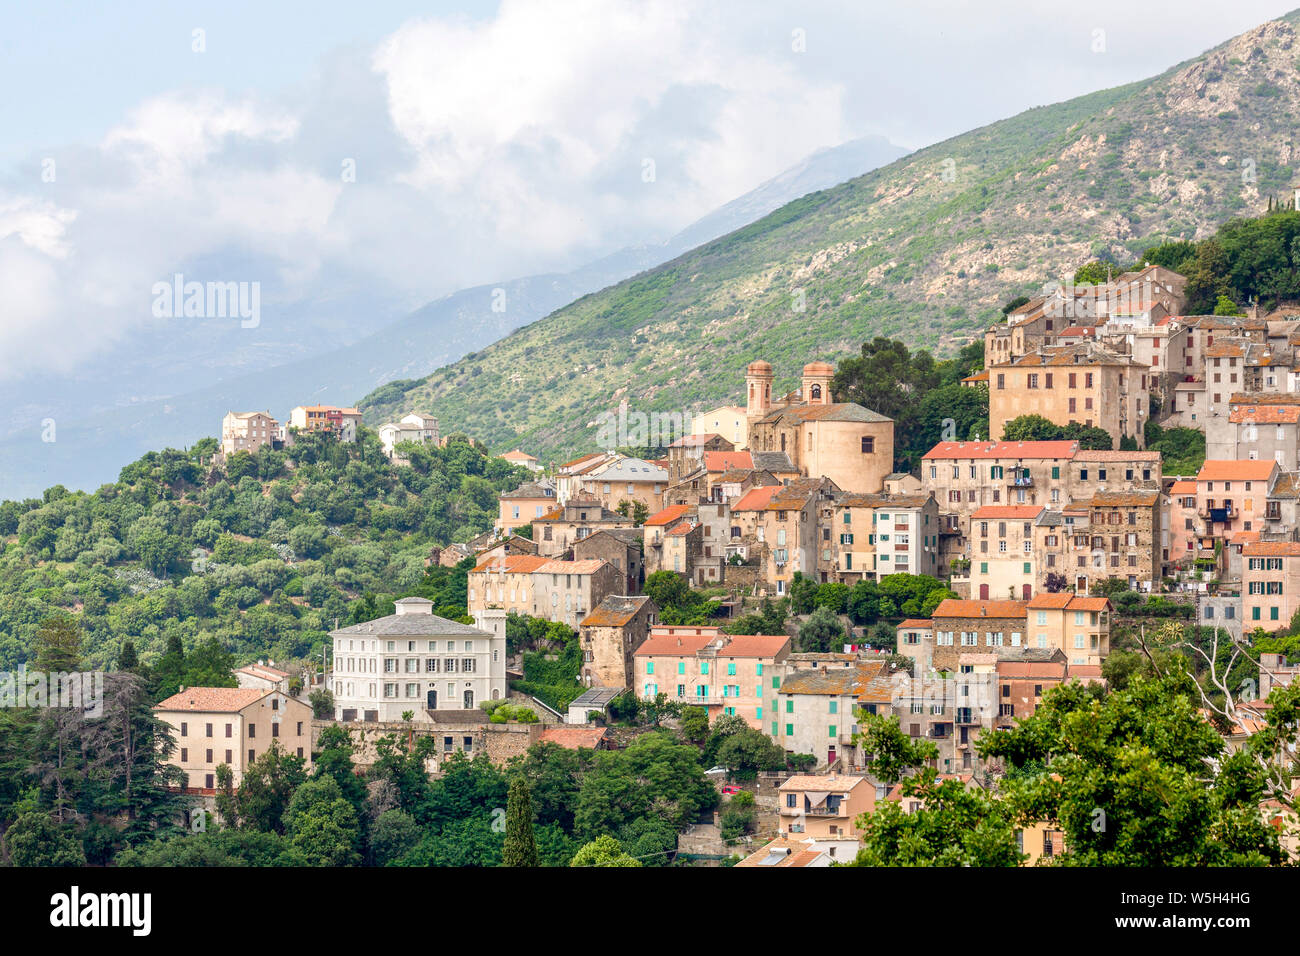 La petite ville montagneuse de Oletta dans le nord de la Corse, France, Europe, Méditerranée Banque D'Images